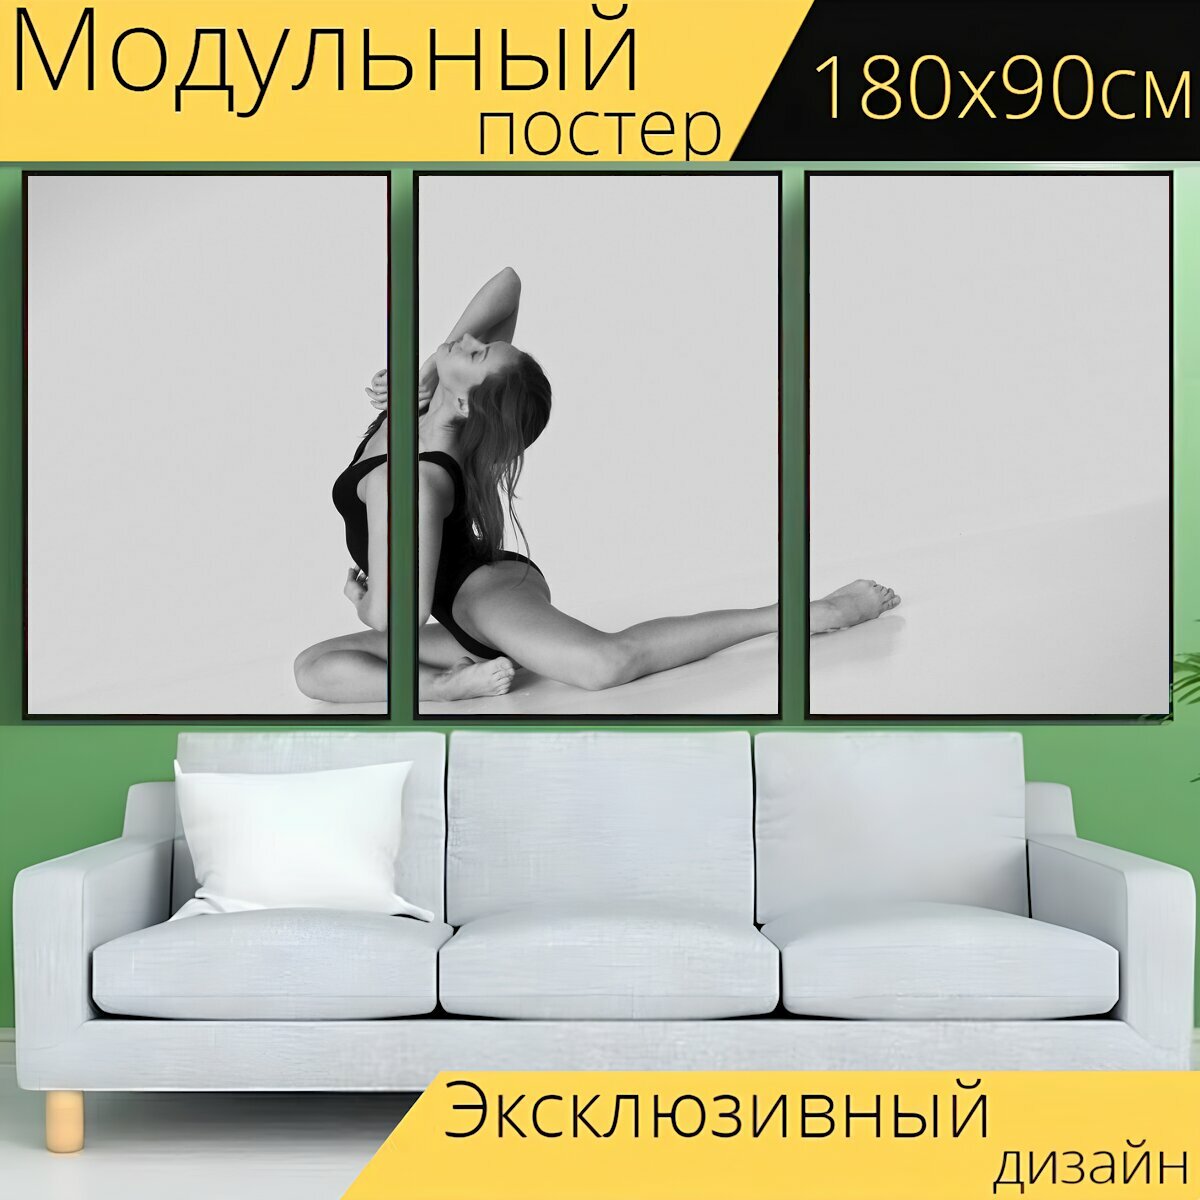 Модульный постер "Девушка, гимнастика, спорт" 180 x 90 см. для интерьера